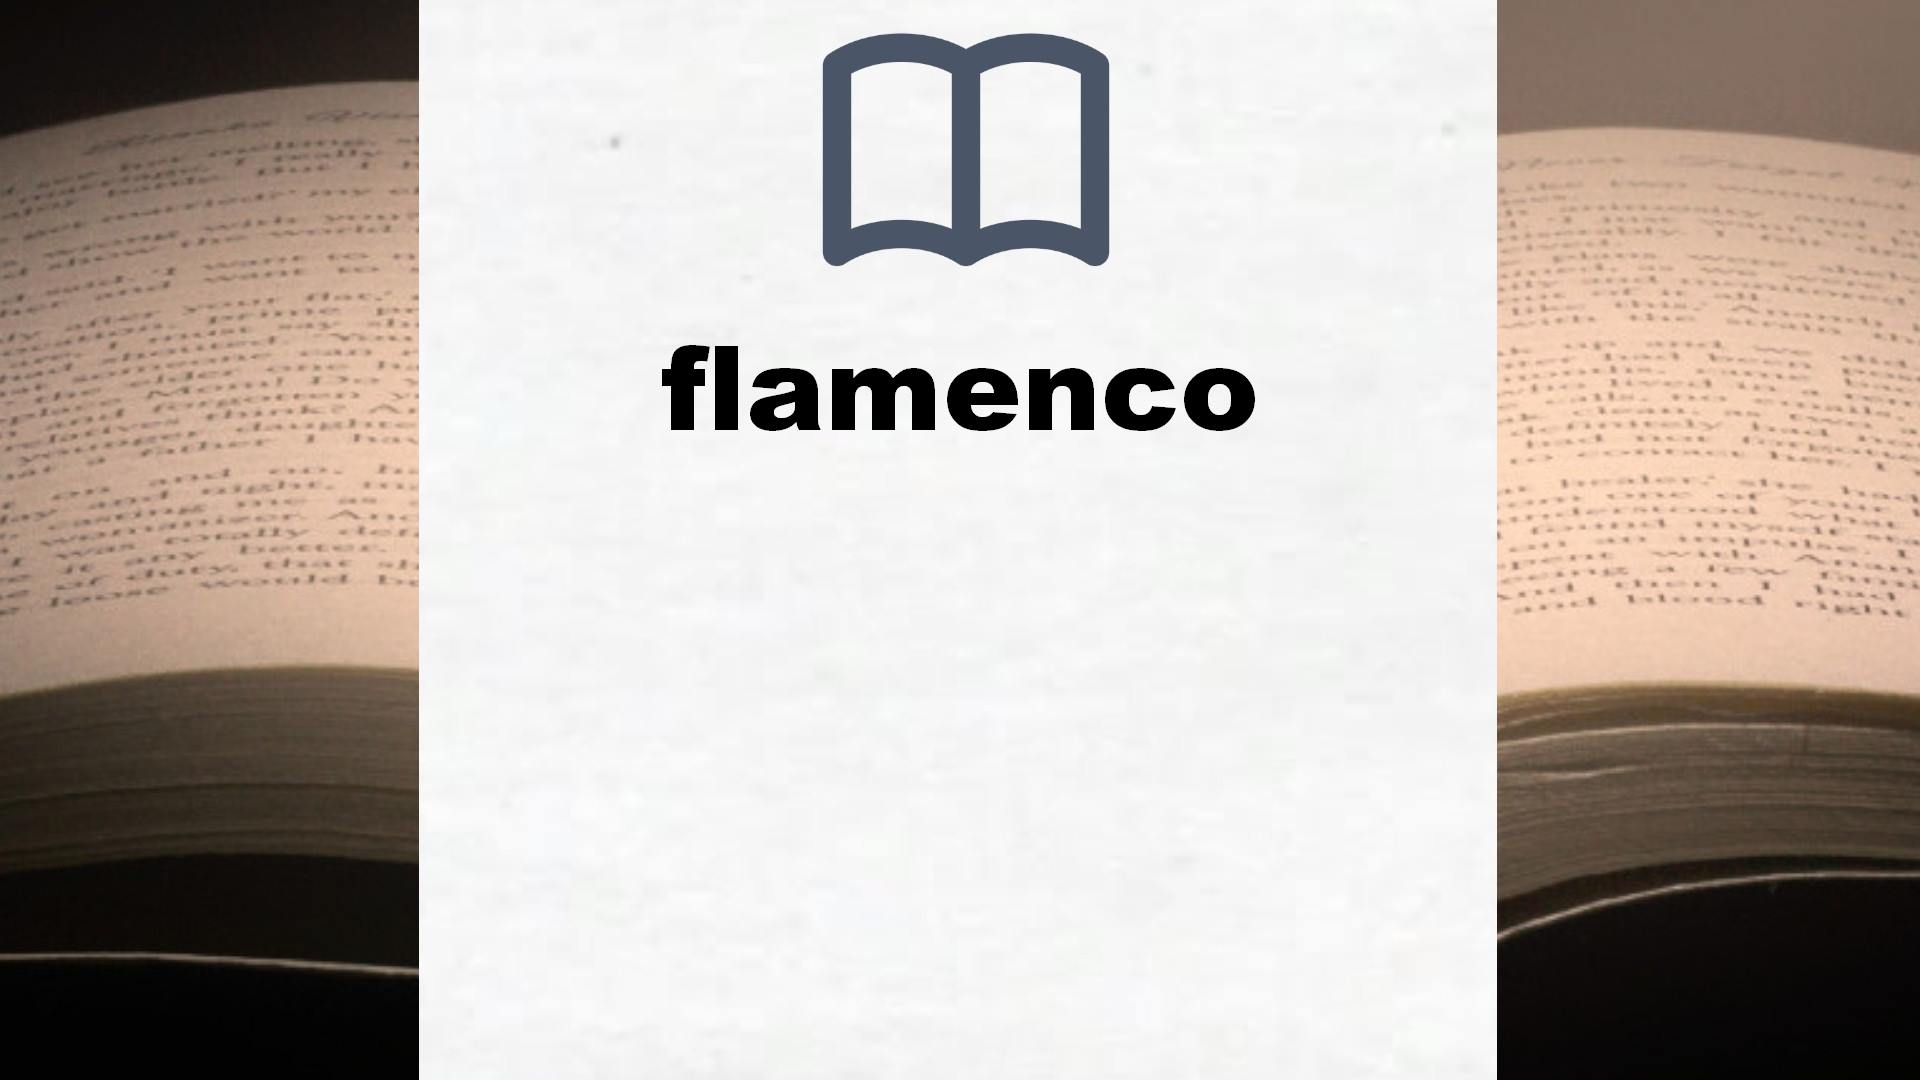 Libros sobre flamenco